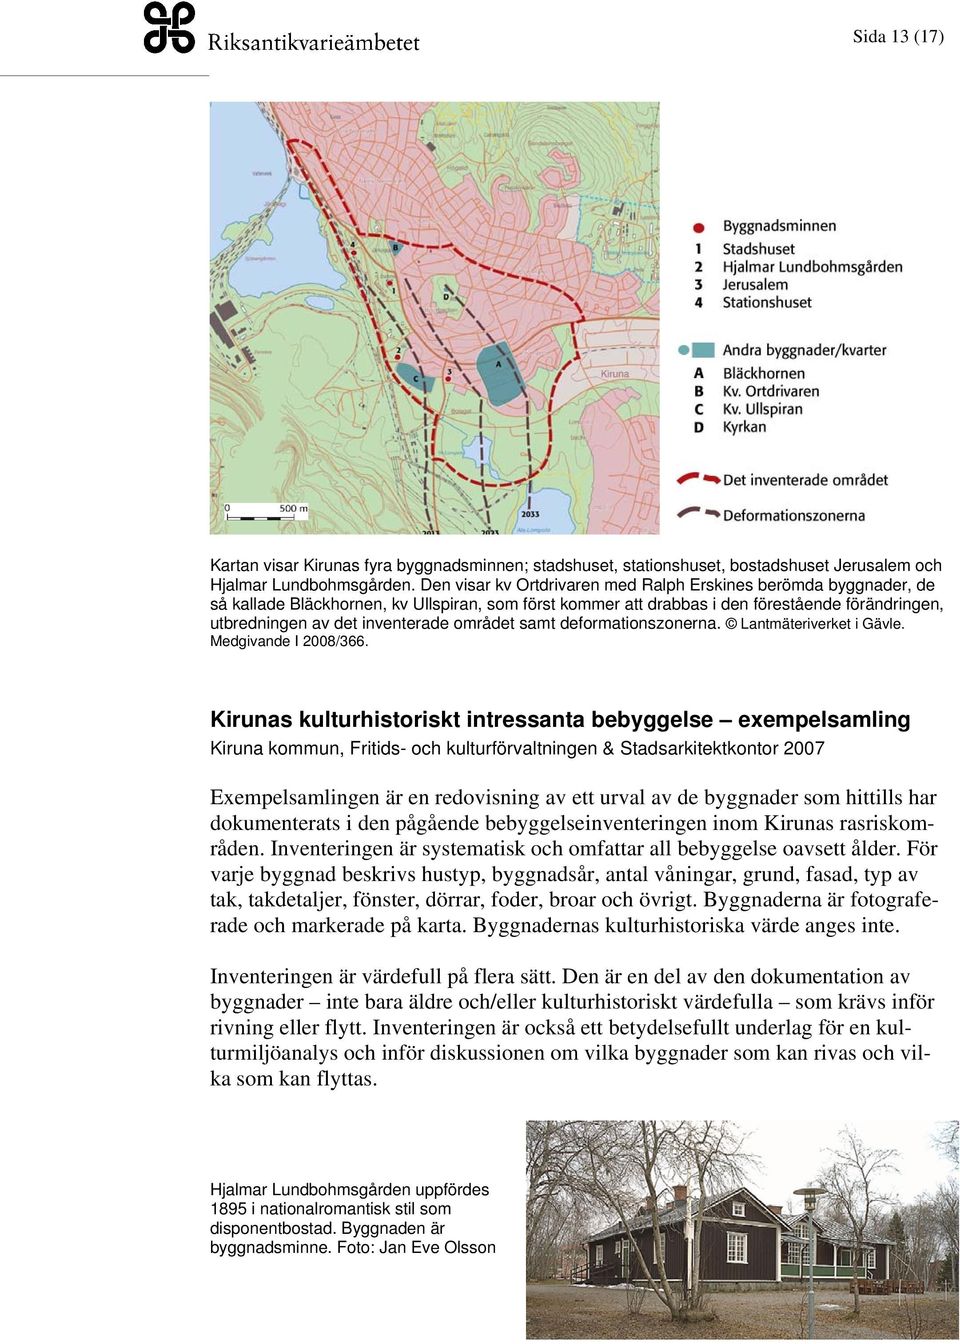 området samt deformationszonerna. Lantmäteriverket i Gävle. Medgivande I 2008/366.